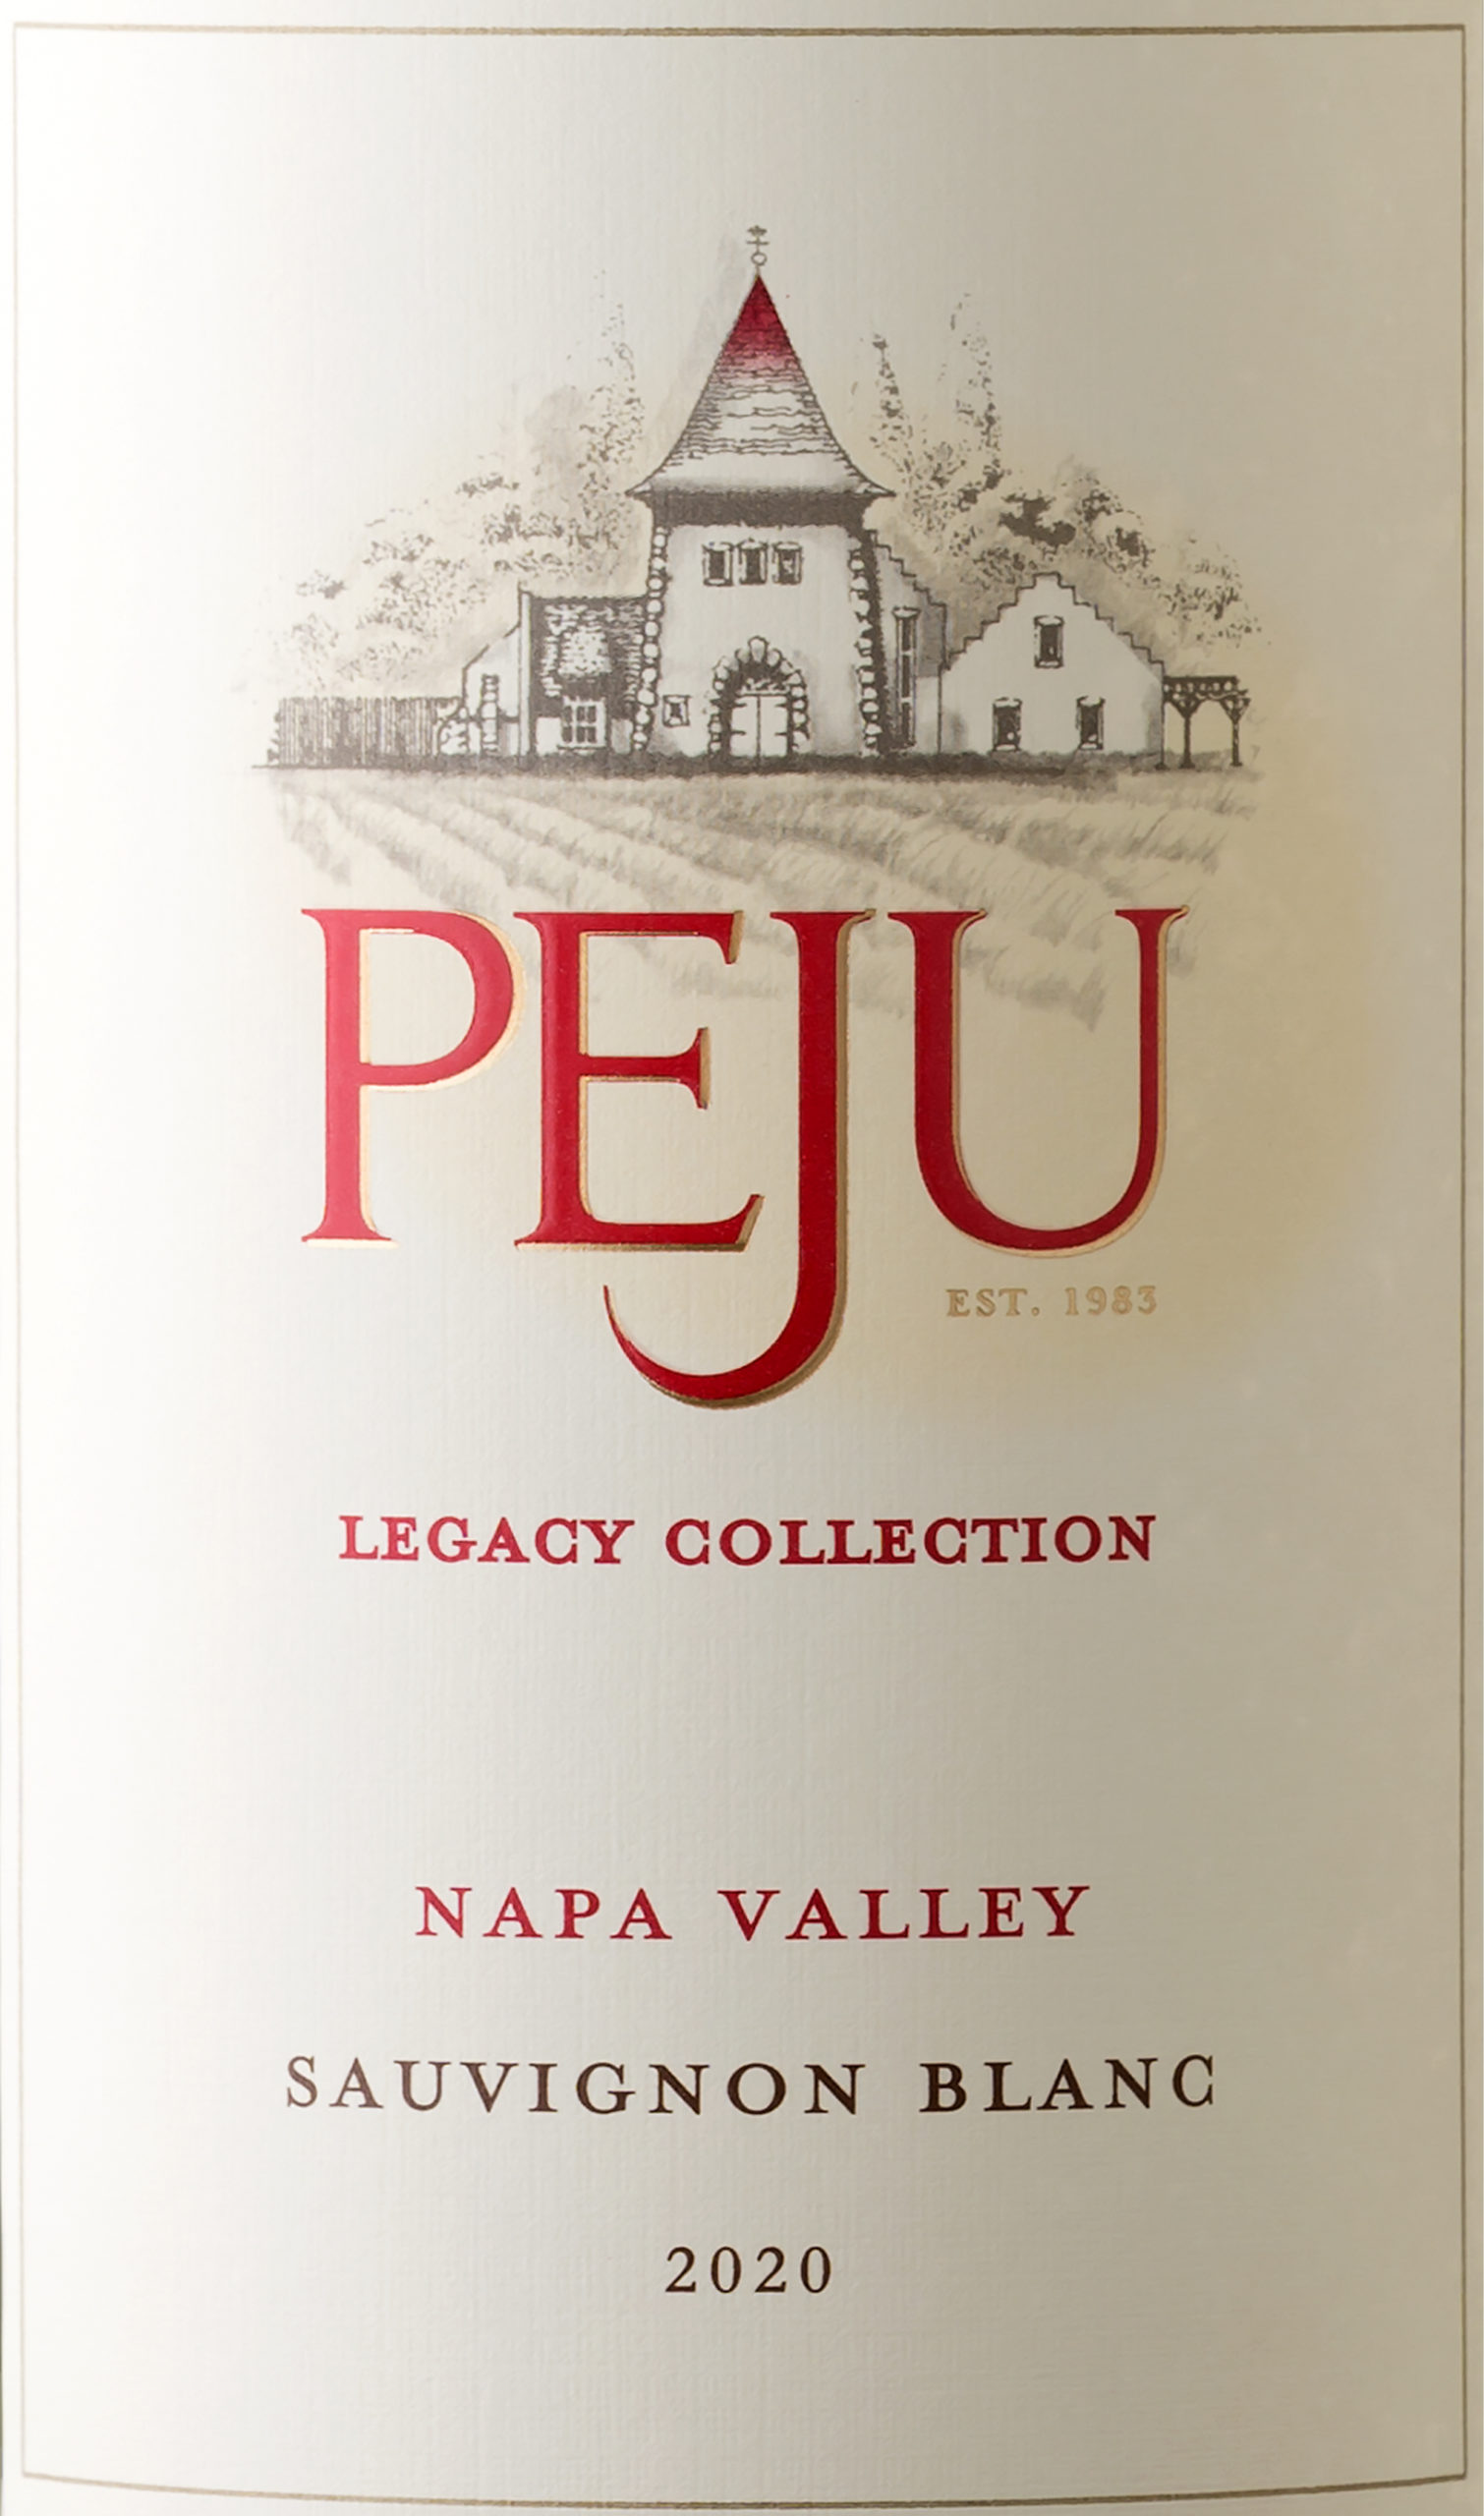 2022 Peju Legacy Collection Sauvignon Blanc North Coast - click image for full description